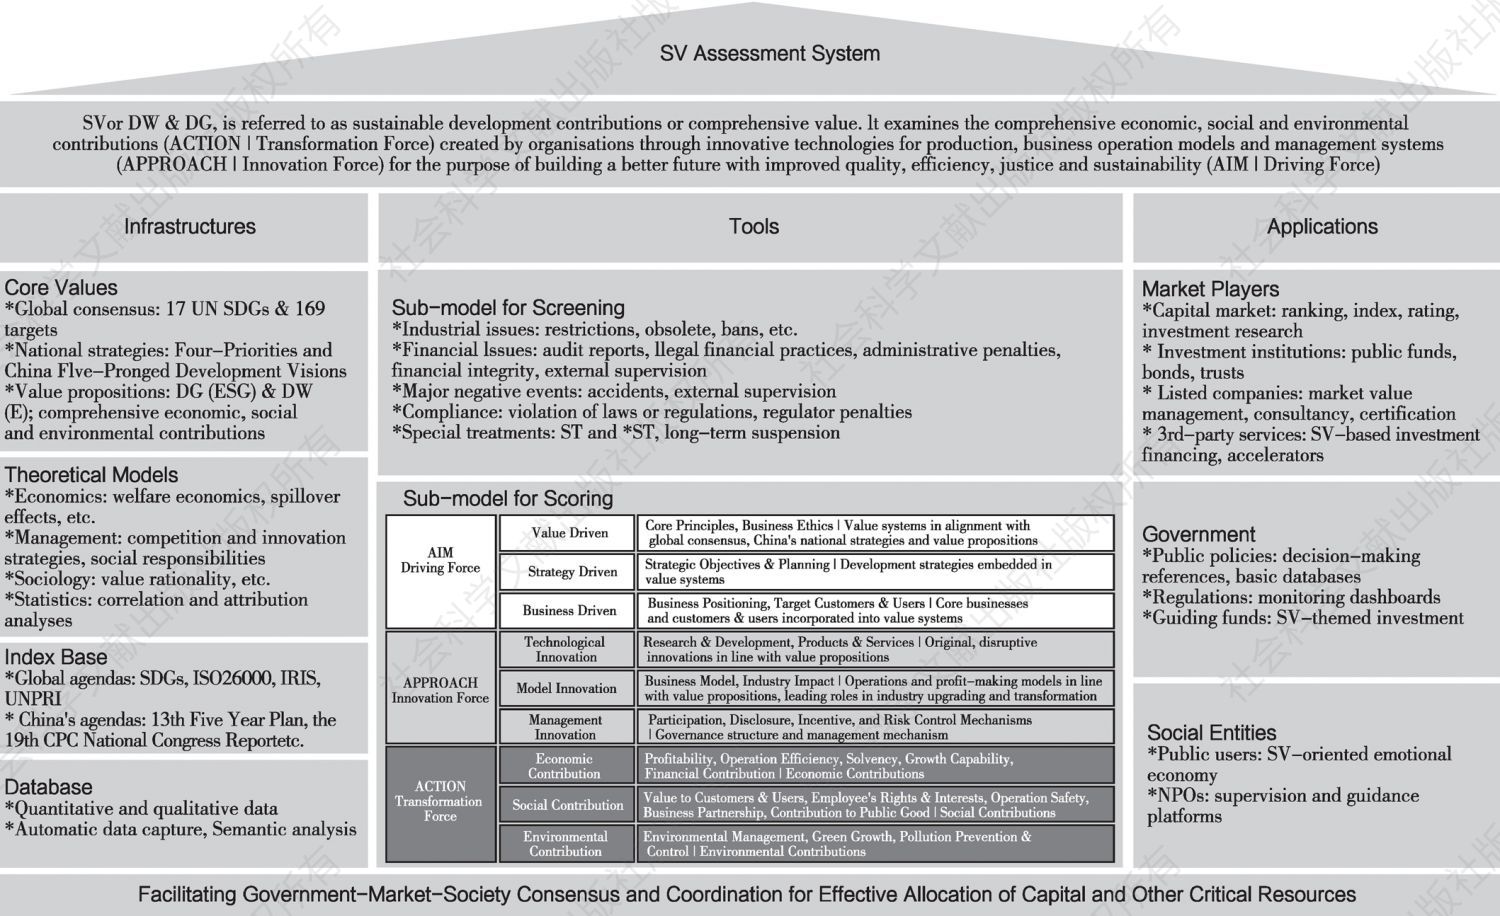 Figure 1.1 SV Assessment Model